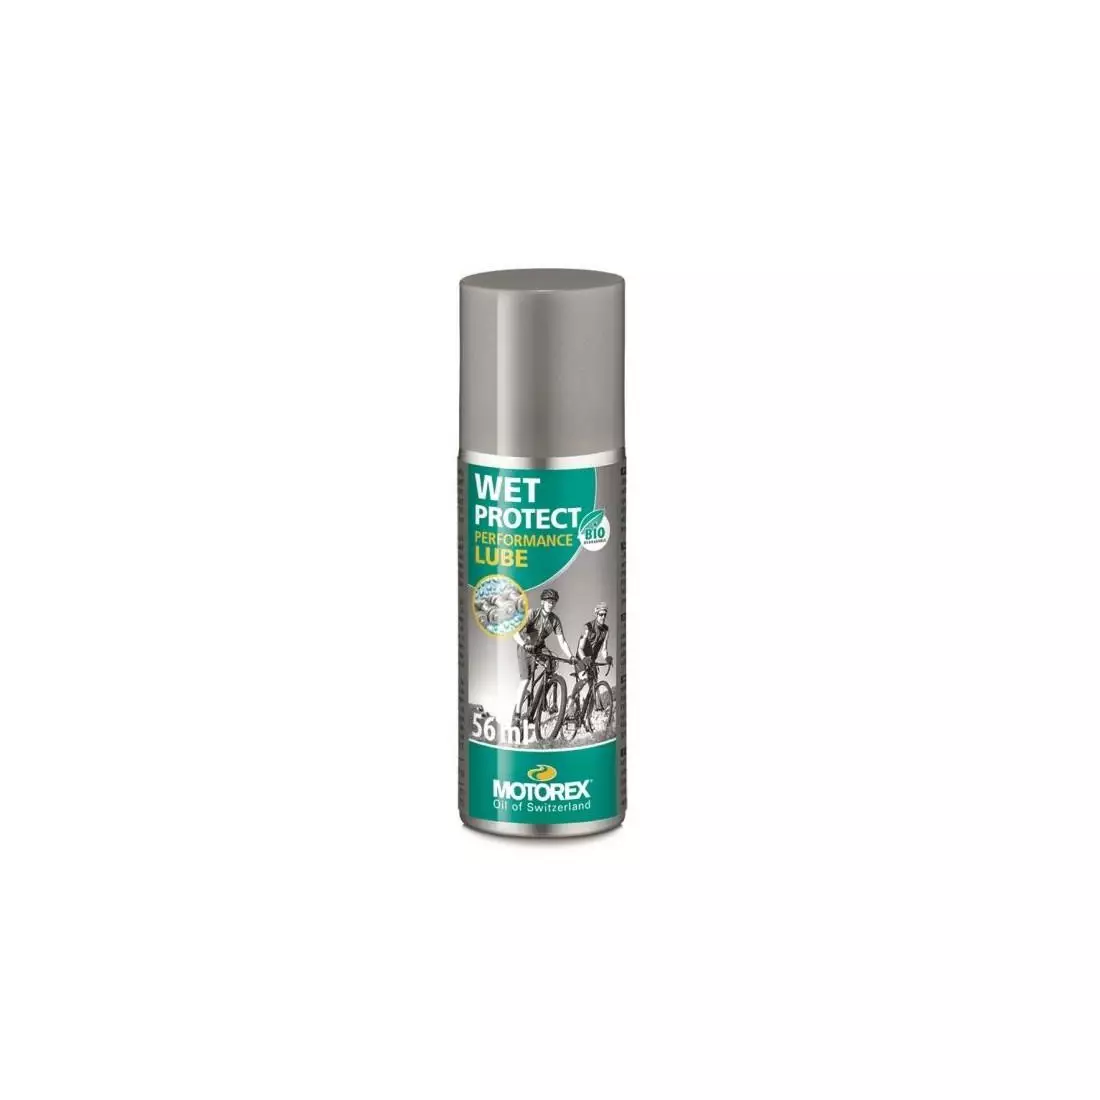 MOTOREX WET PROTECT lánc kenőanyag, nedves körülmények között, spray 56 ml